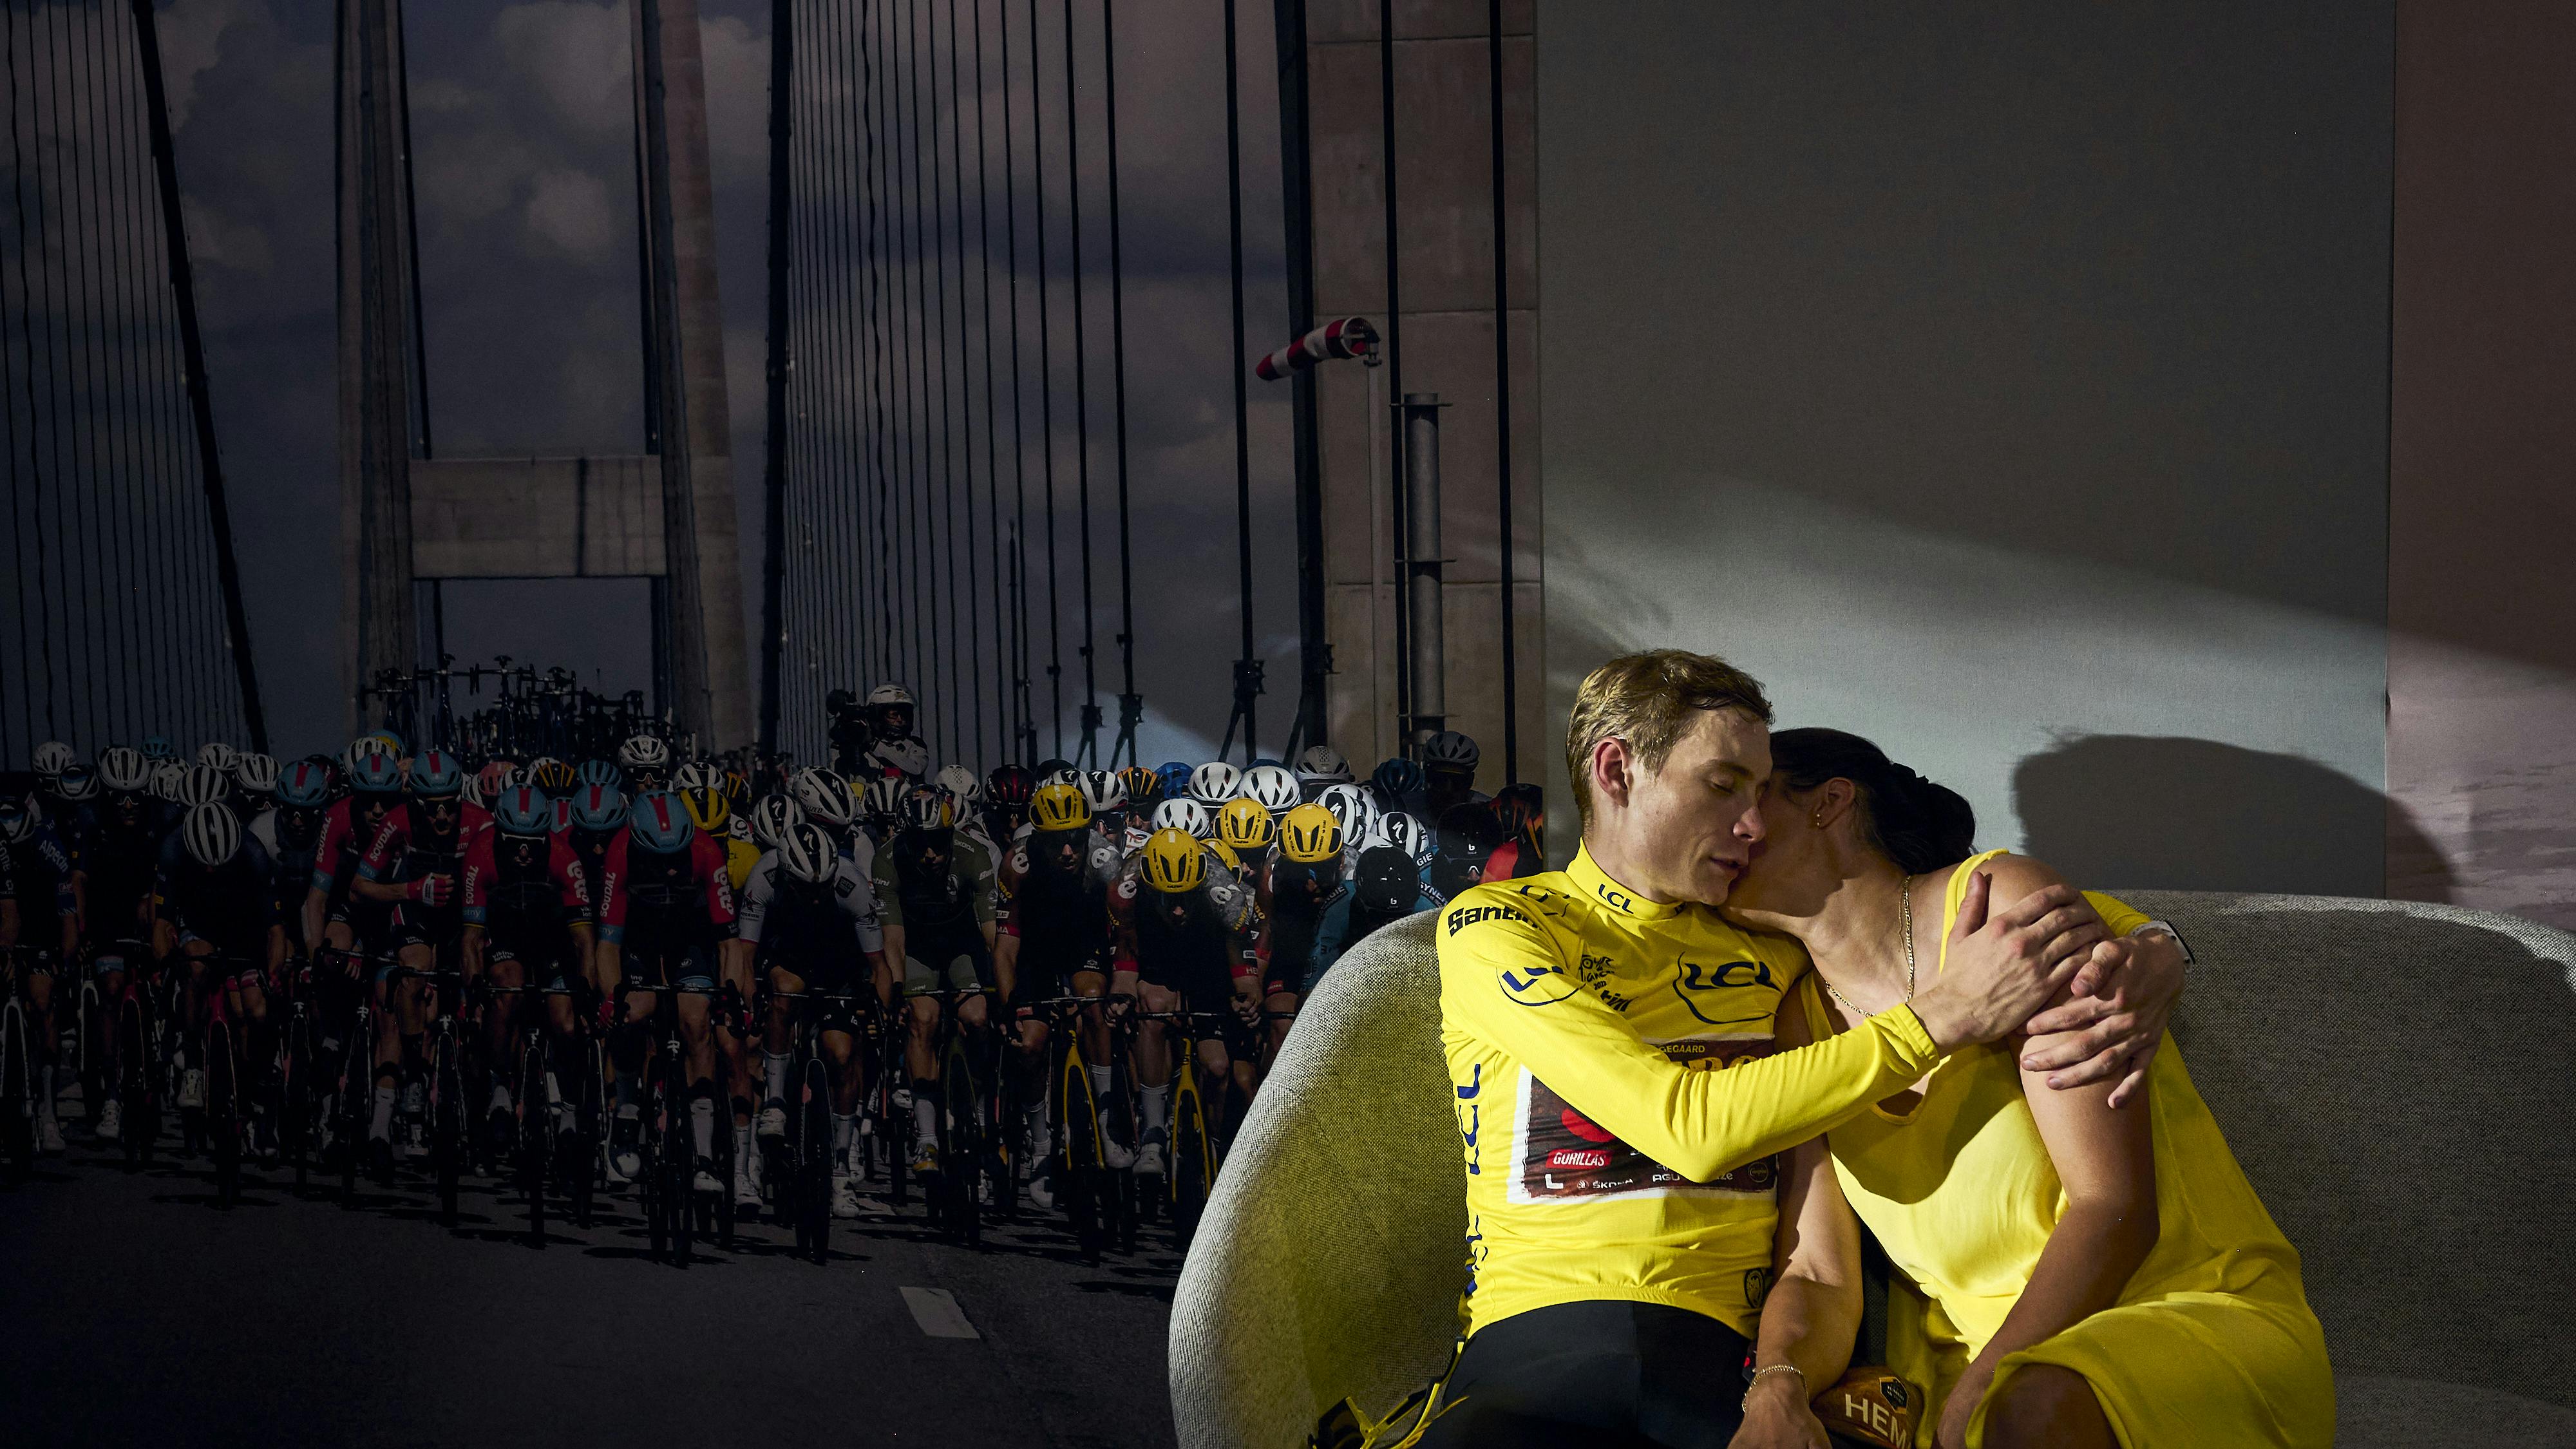 Den hollandske fotograf Bram Berkien var manden, der fangede det rørende øjeblik mellem Jonas Vingegaard og hans kæreste Trine Marie Hansen, lige efter Vingegaard havde sikret sig den samlede sejr i Tour de France. nbsp;